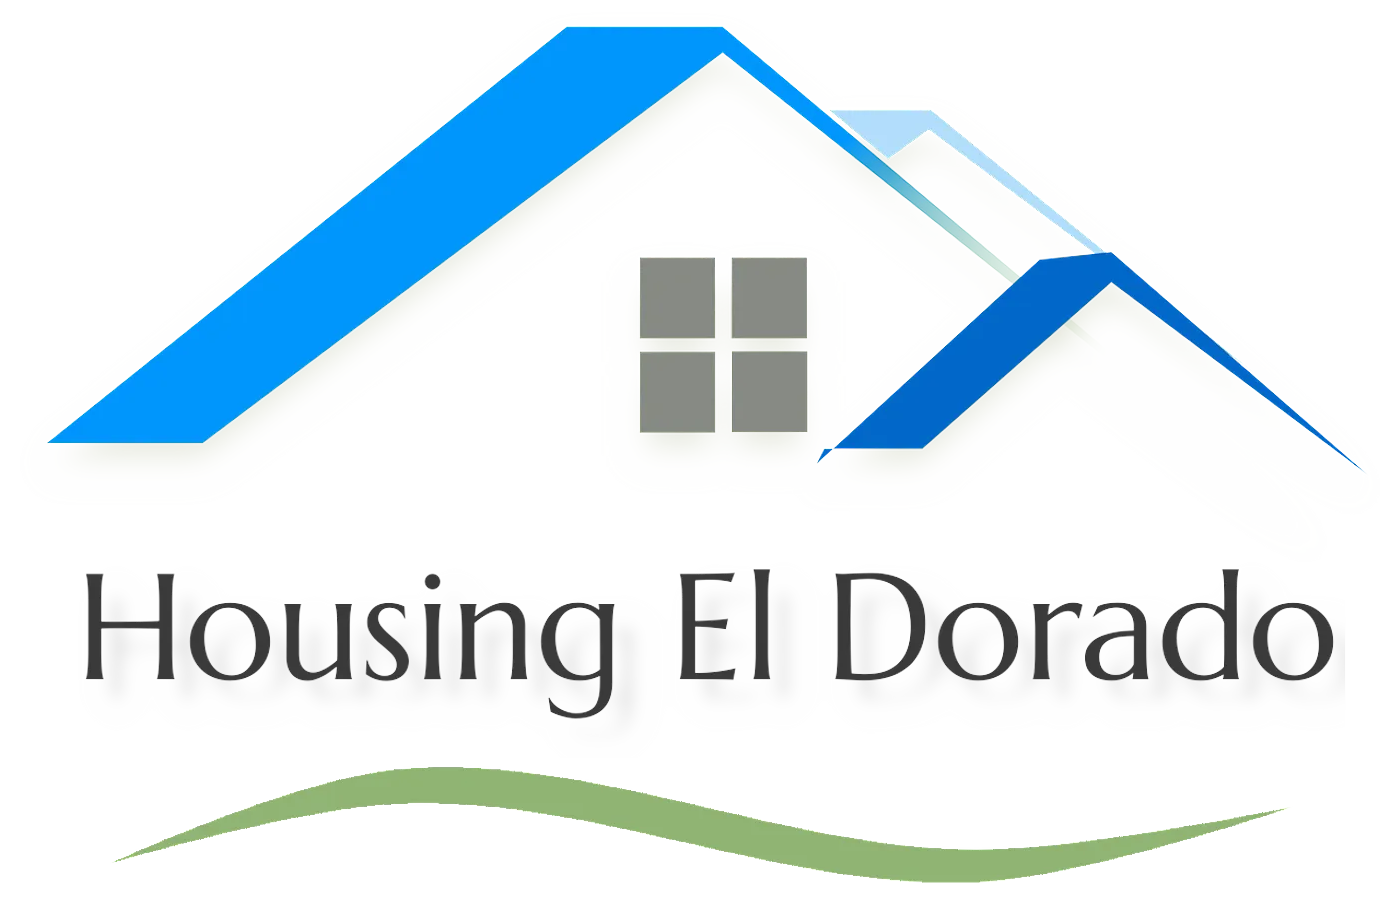 Housing El Dorodo